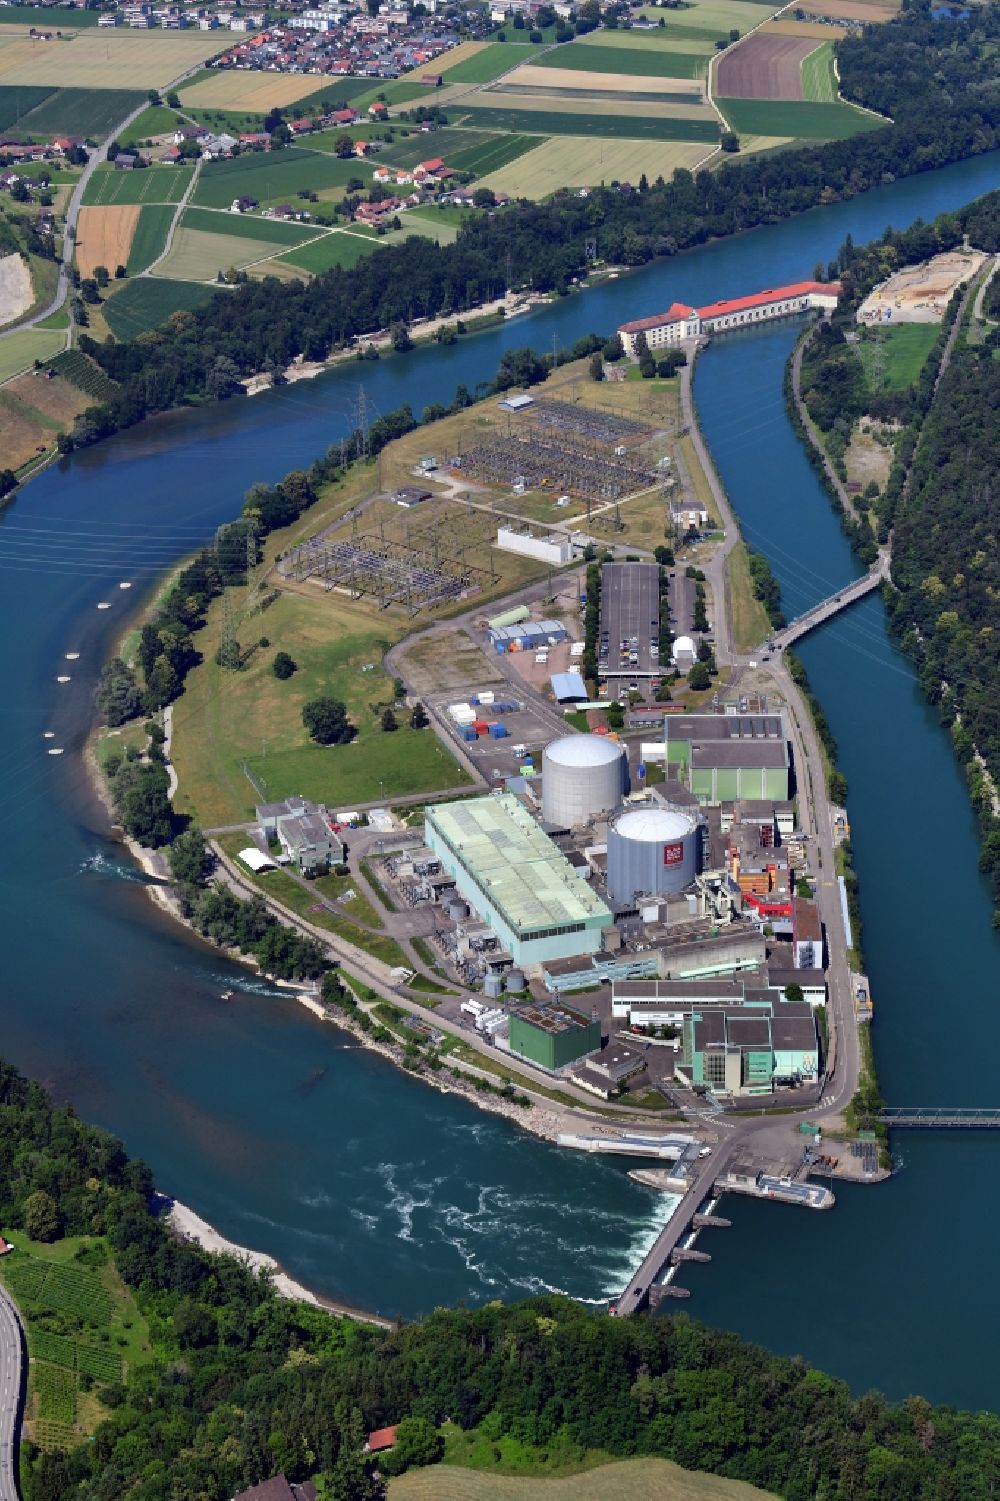 Luftbild Beznau - KKB Reaktorblöcke und Anlagen des AKW - KKW Kernkraftwerk in Beznau im Kanton Aargau, Schweiz